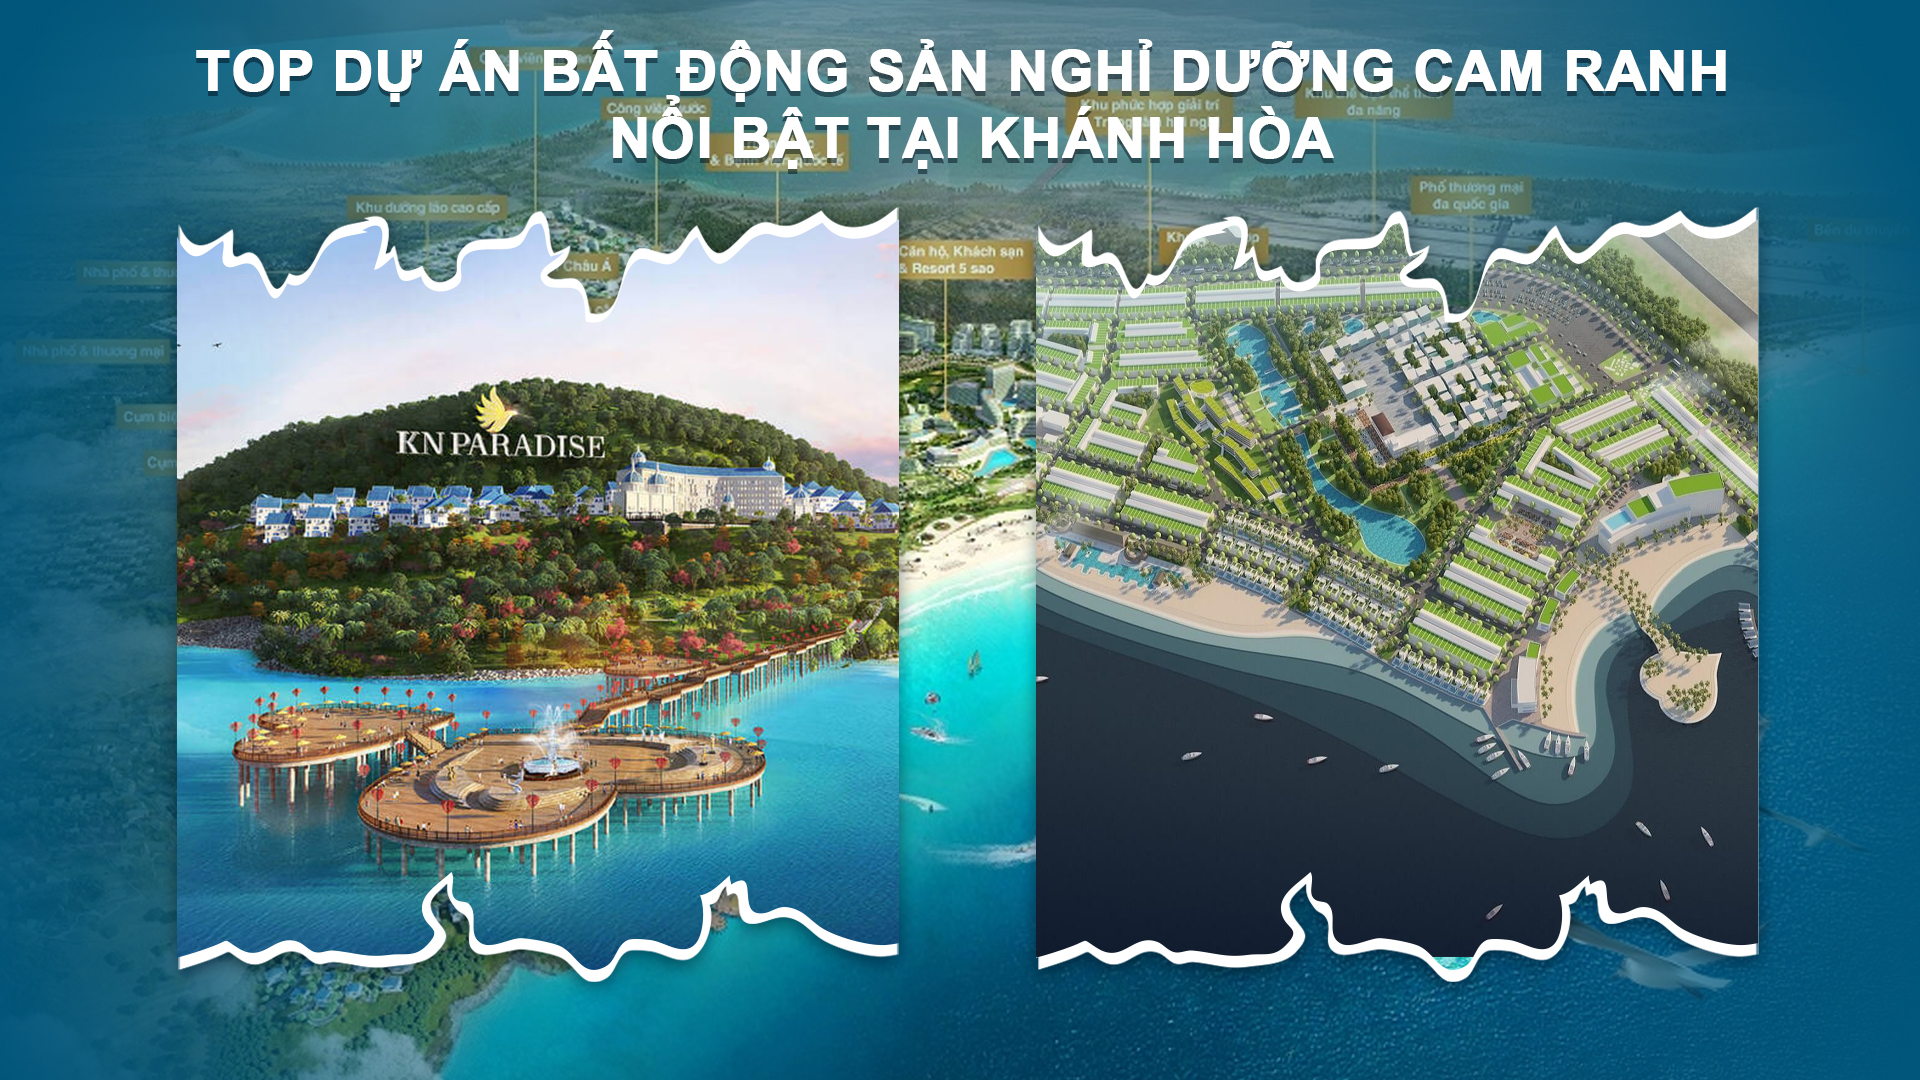 Top dự án Bất động sản nghỉ dưỡng Cam Ranh nổi bật tại Khánh Hòa